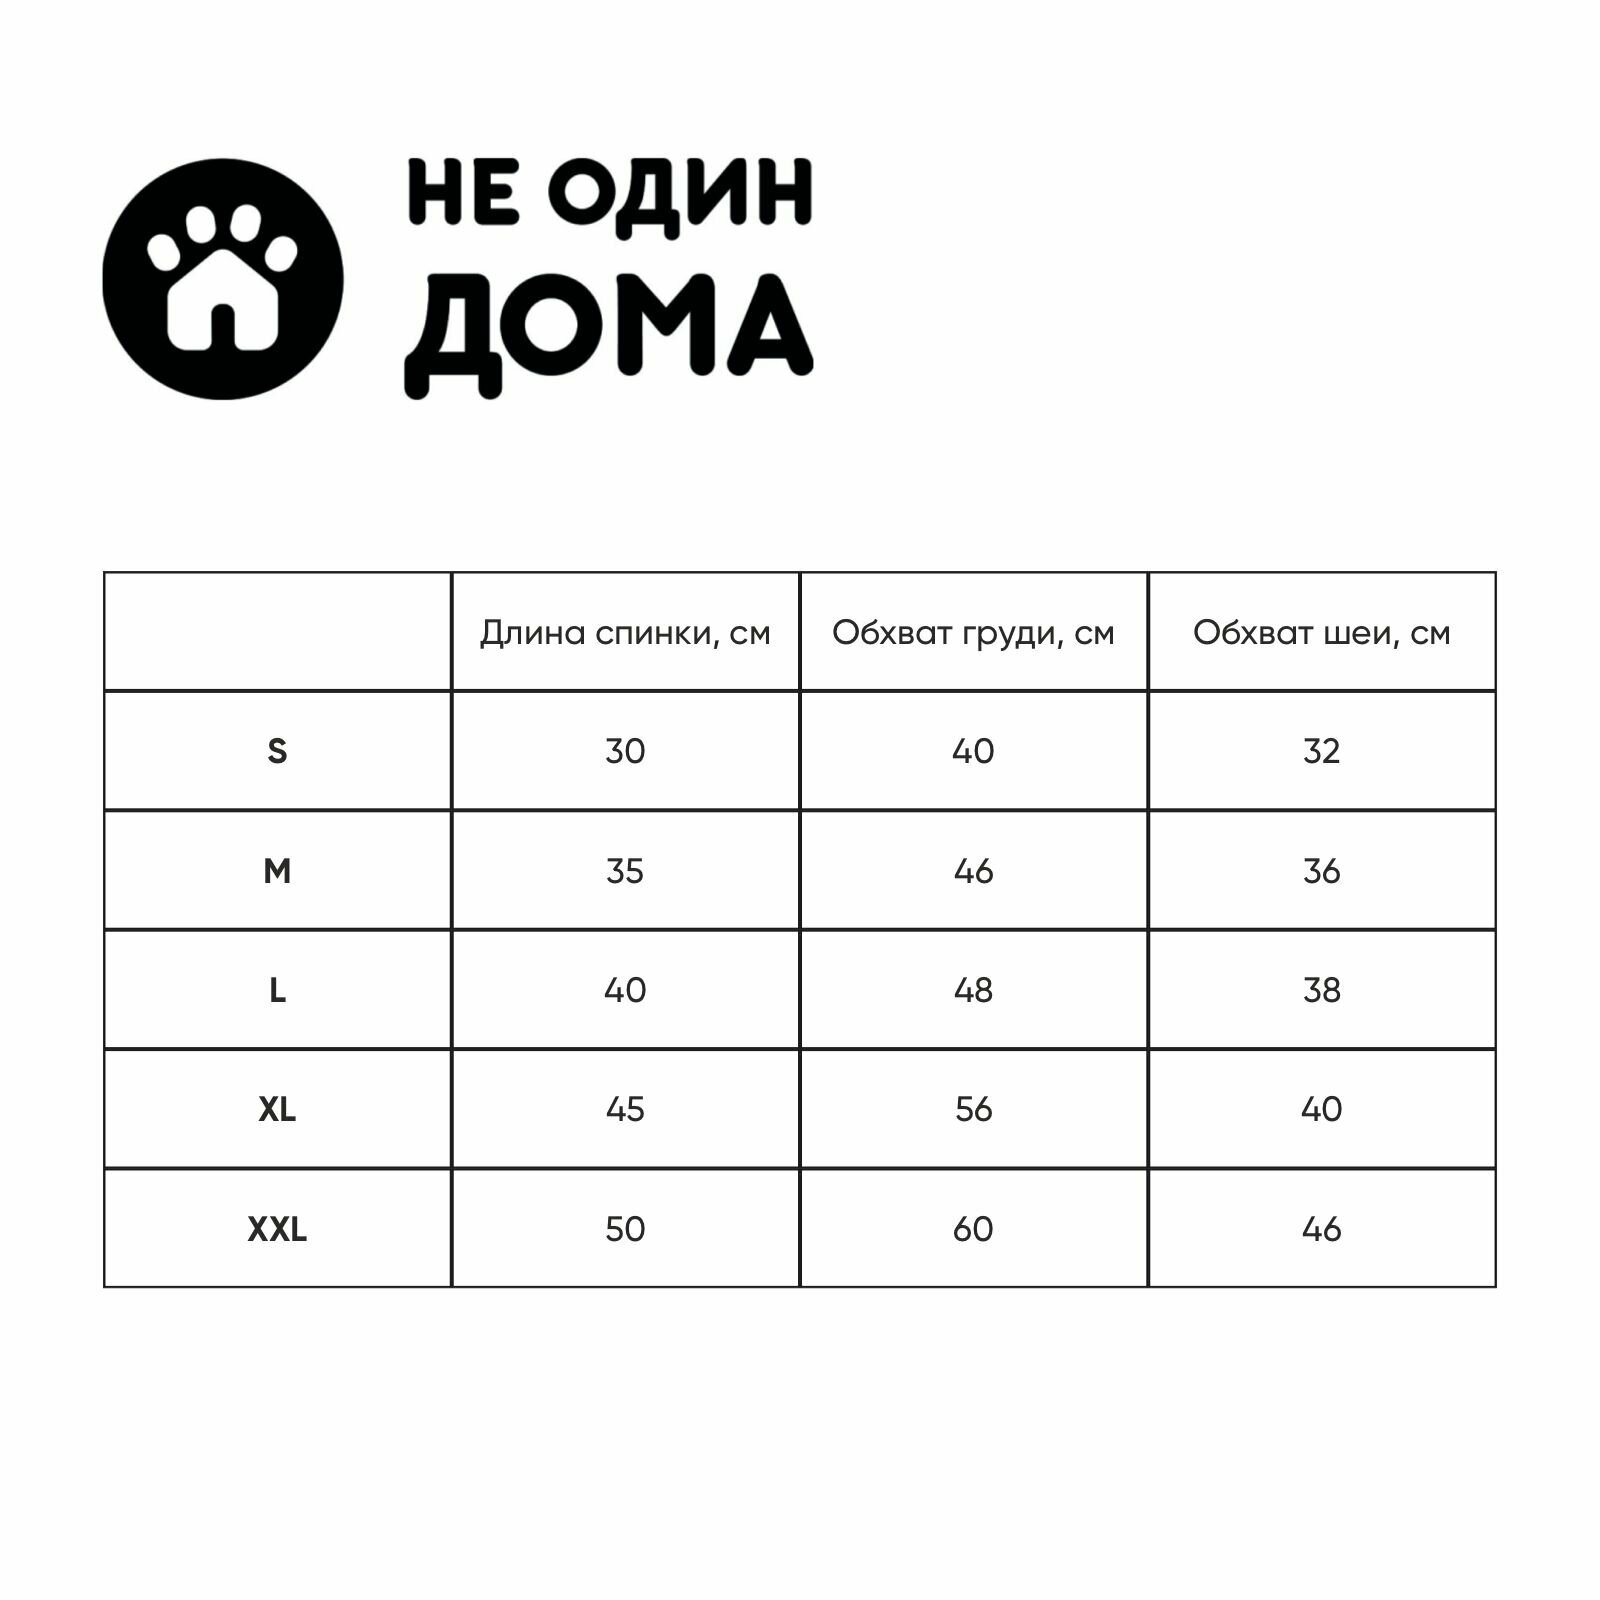 Жилетка для собак, одежда для собак "Не Один Дома" Попона, коричневый, M, длина спинки - 35 см